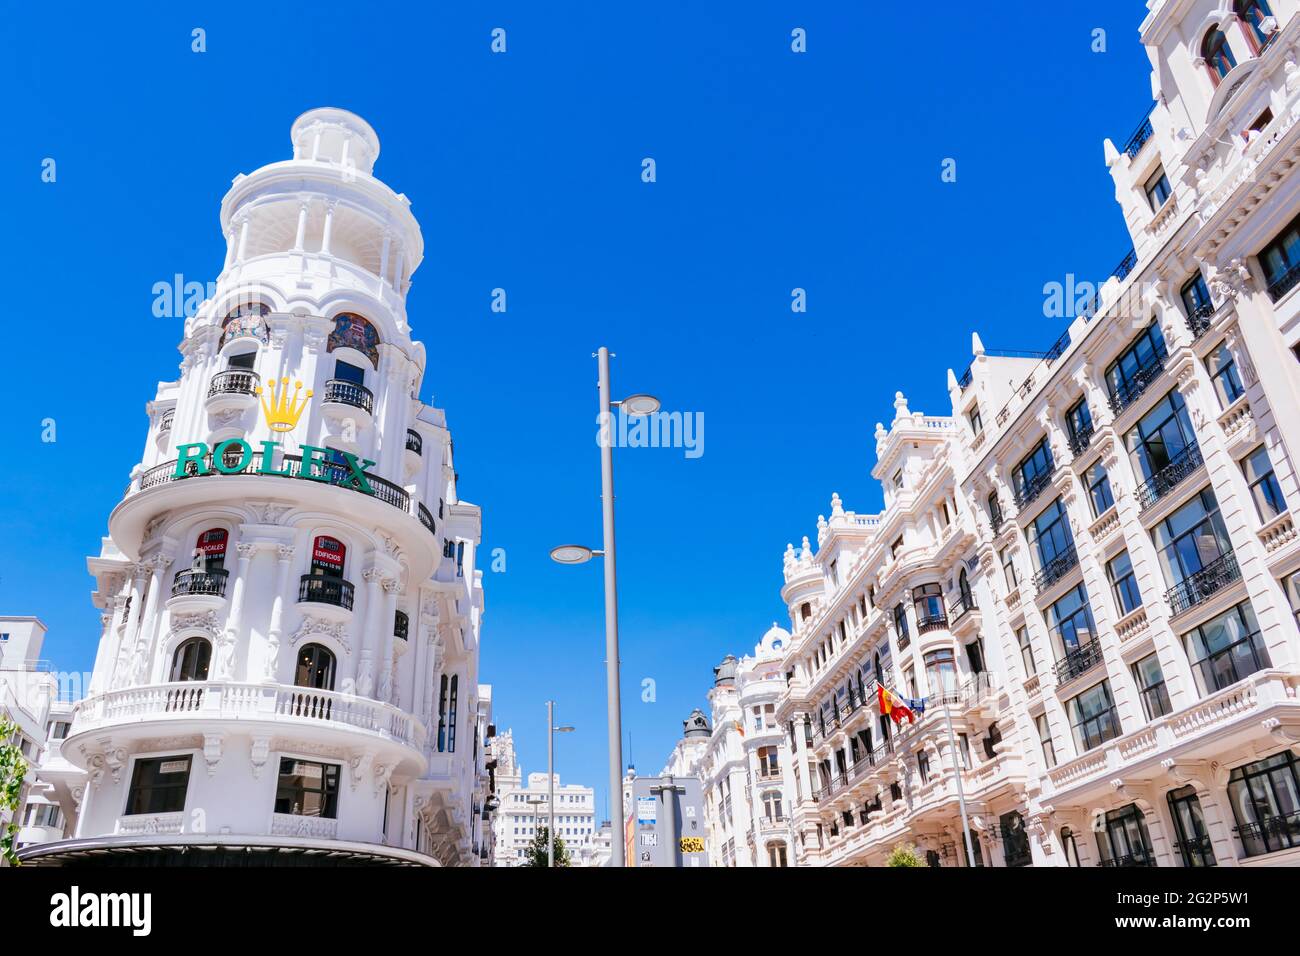 El edificio Grassy (L) está situado en la calle Gran Vía número 1 de Madrid. Fue uno de los primeros construidos al final de la primera sección de la avenida. Foto de stock